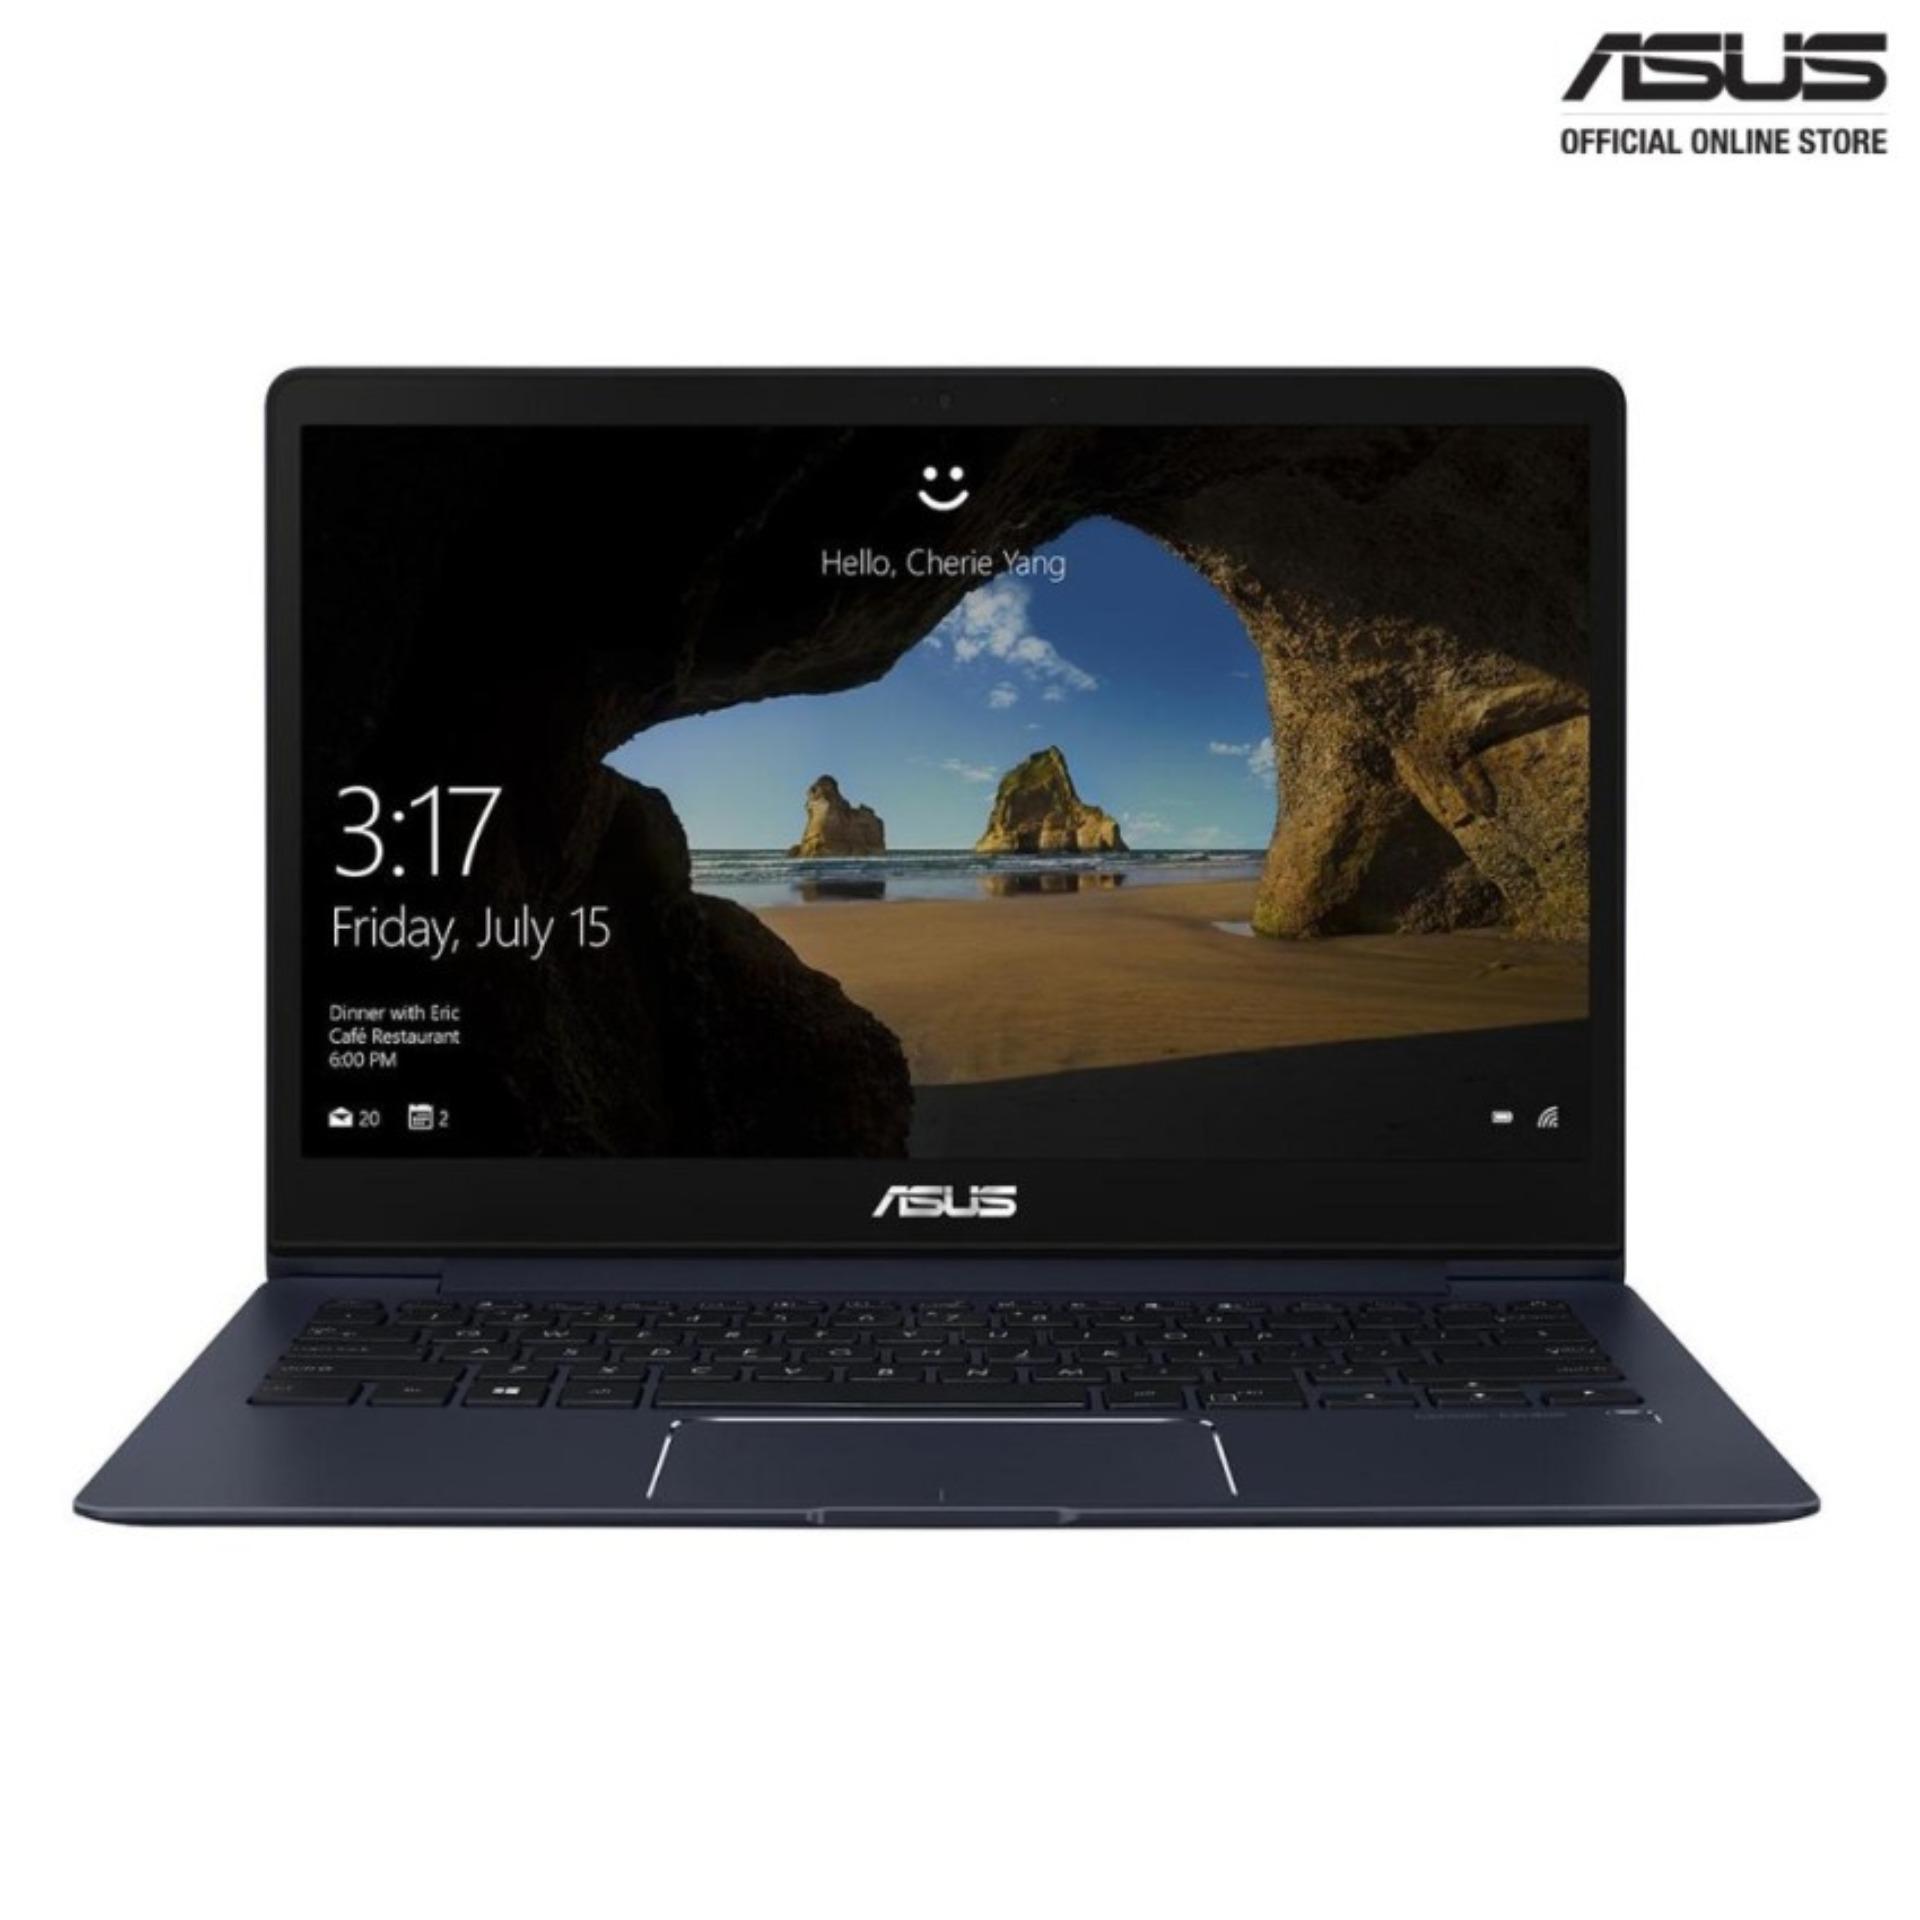 ASUS ZenBook 13 UX331UN-EG008T/ 13.3/ Intel® Core™ i7-8550U/ SATA3 512GB/16GB RAM Discrete Graphics MX150 with 2GB DDR5